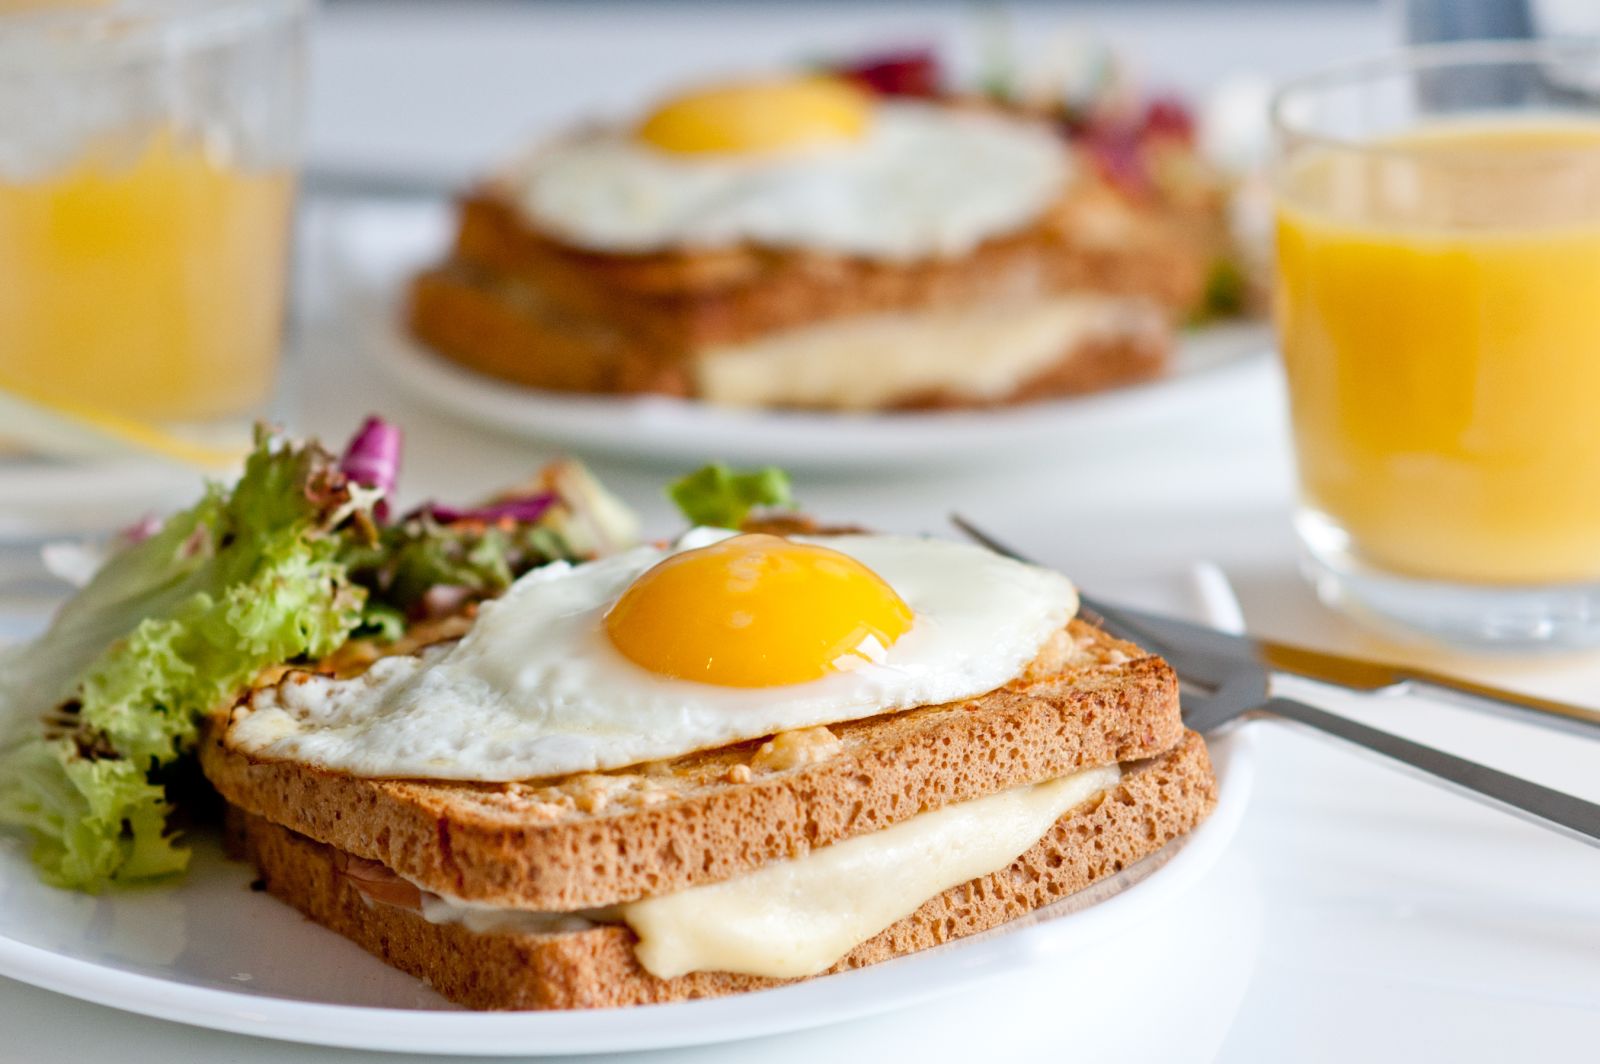 Bánh mì sandwich trứng phô mai giúp cân bằng các chất dinh dưỡng